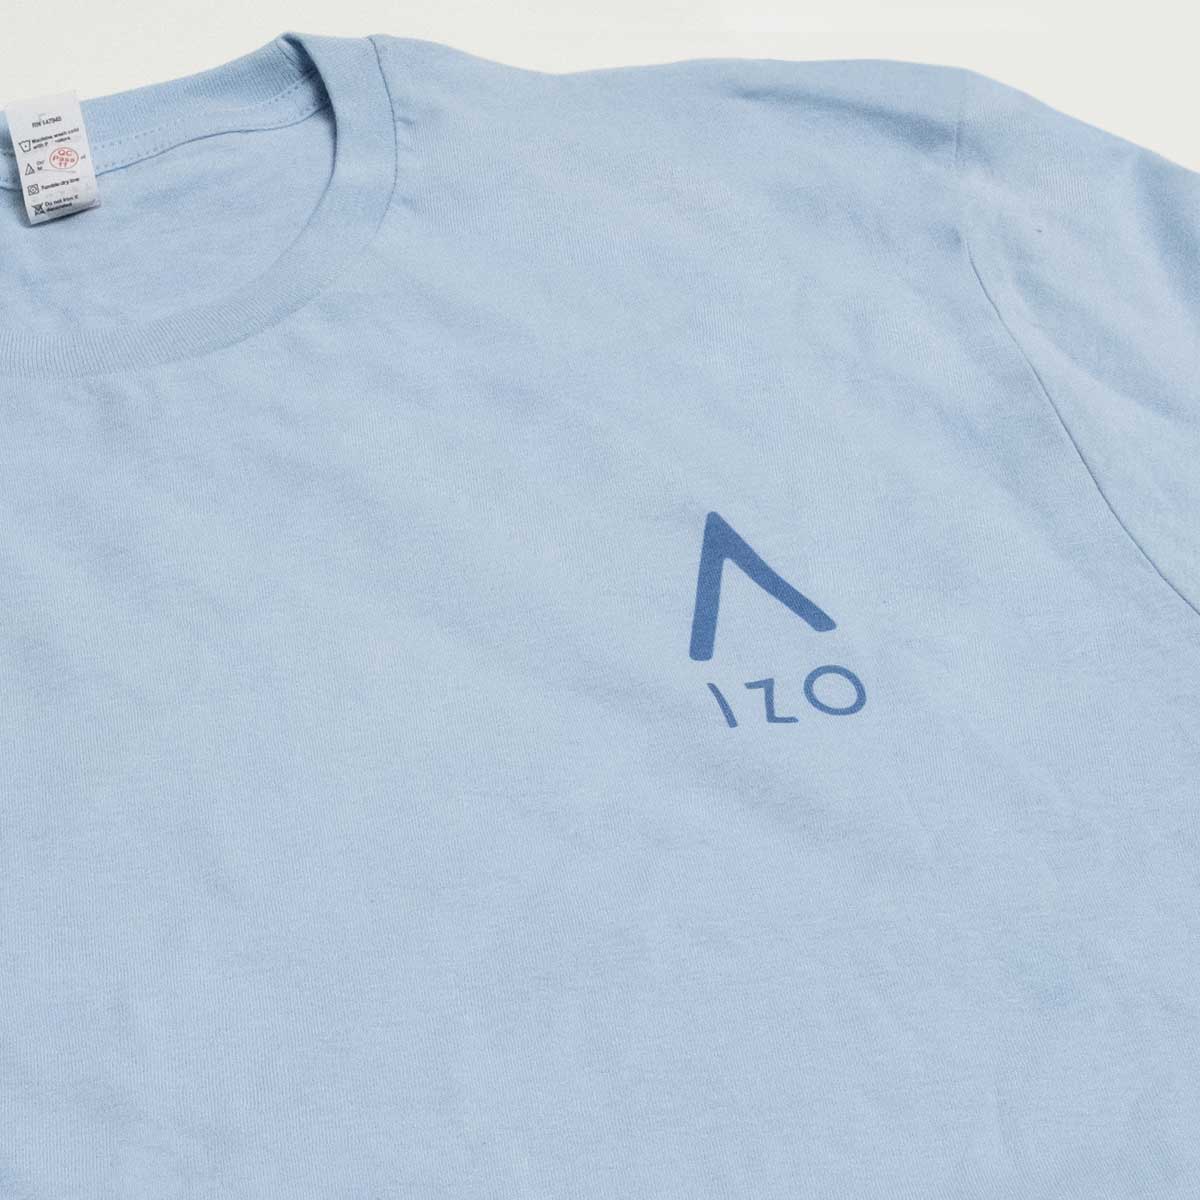 Izo-shirt